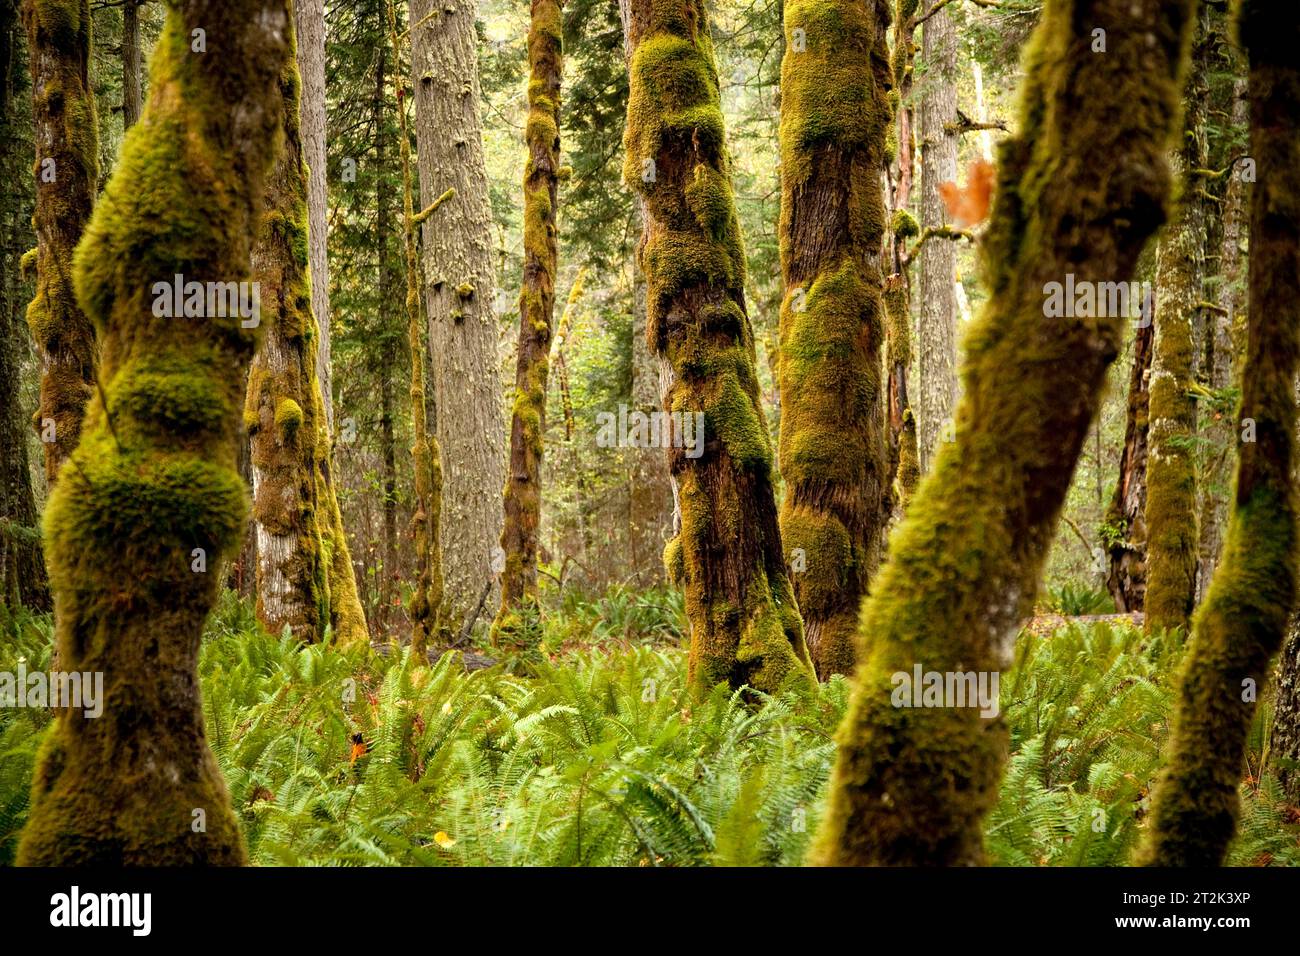 Gli alberi di Mossy si trovano comunemente nel Parco Nazionale Olimpico a causa della forte pioggia che cade ogni anno. Le felci verdi brillanti coprono il pavimento della foresta. Foto Stock